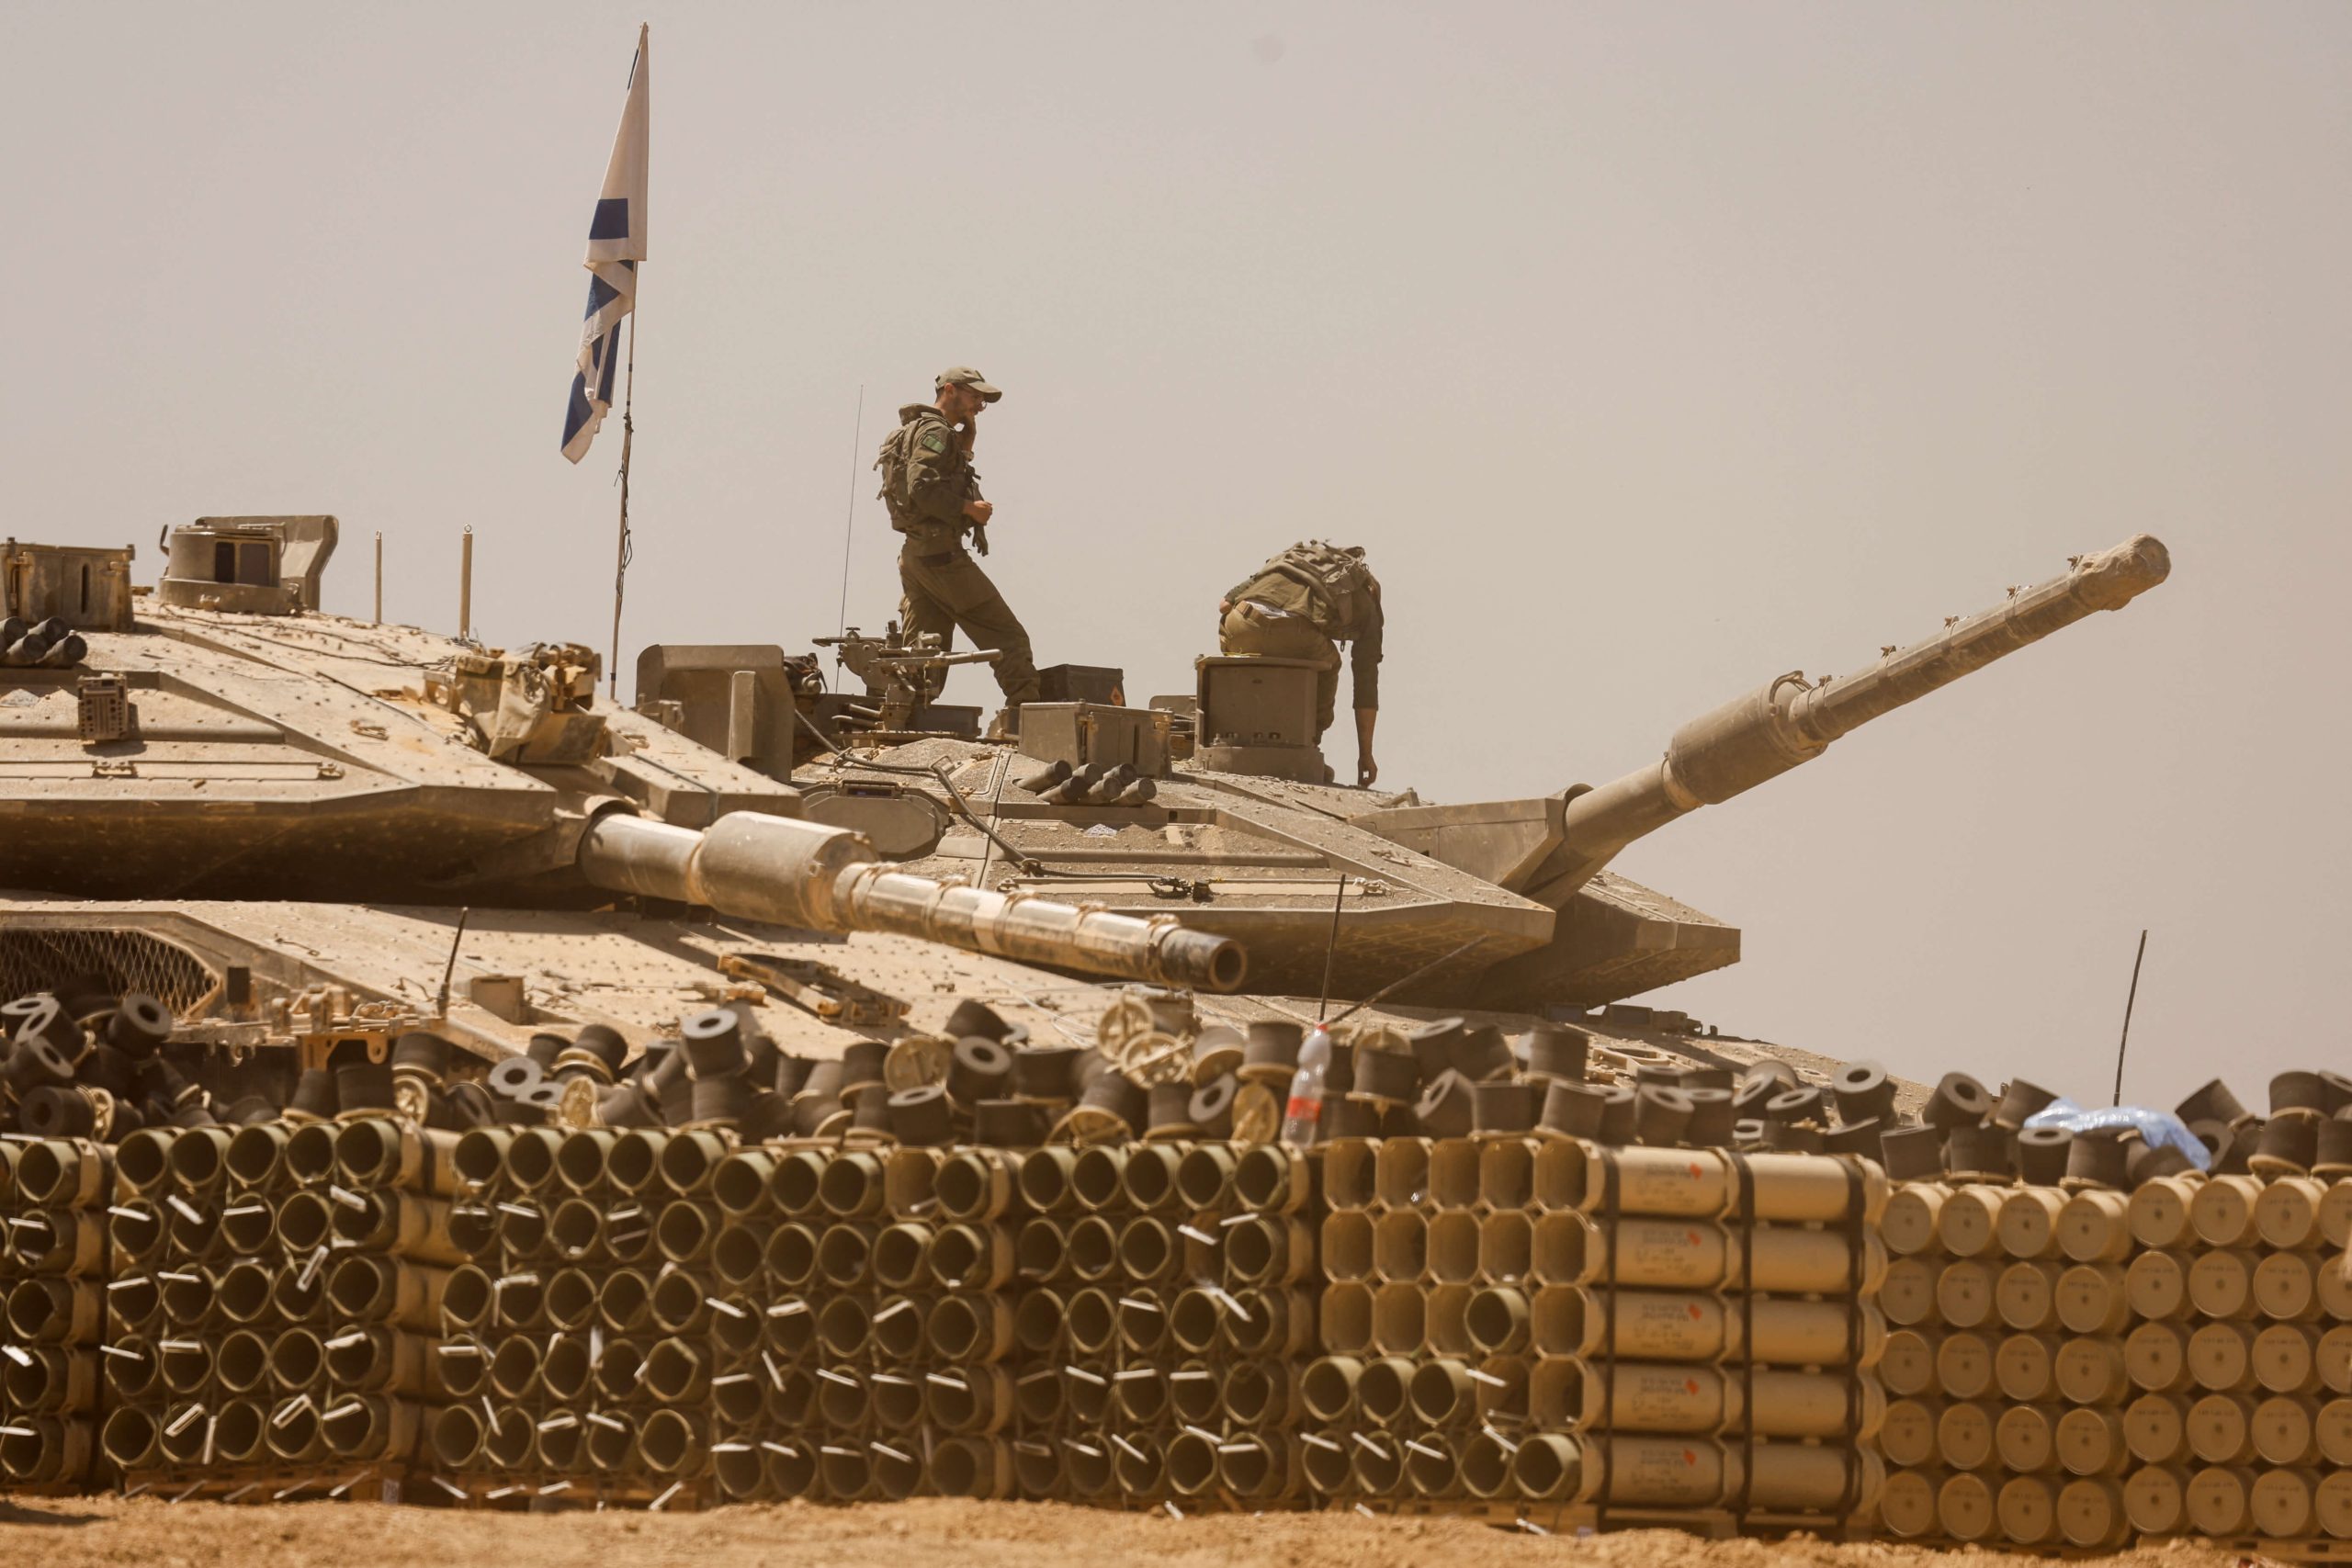 反抗美国停运武器警告  以色列防长誓言战争目的必达